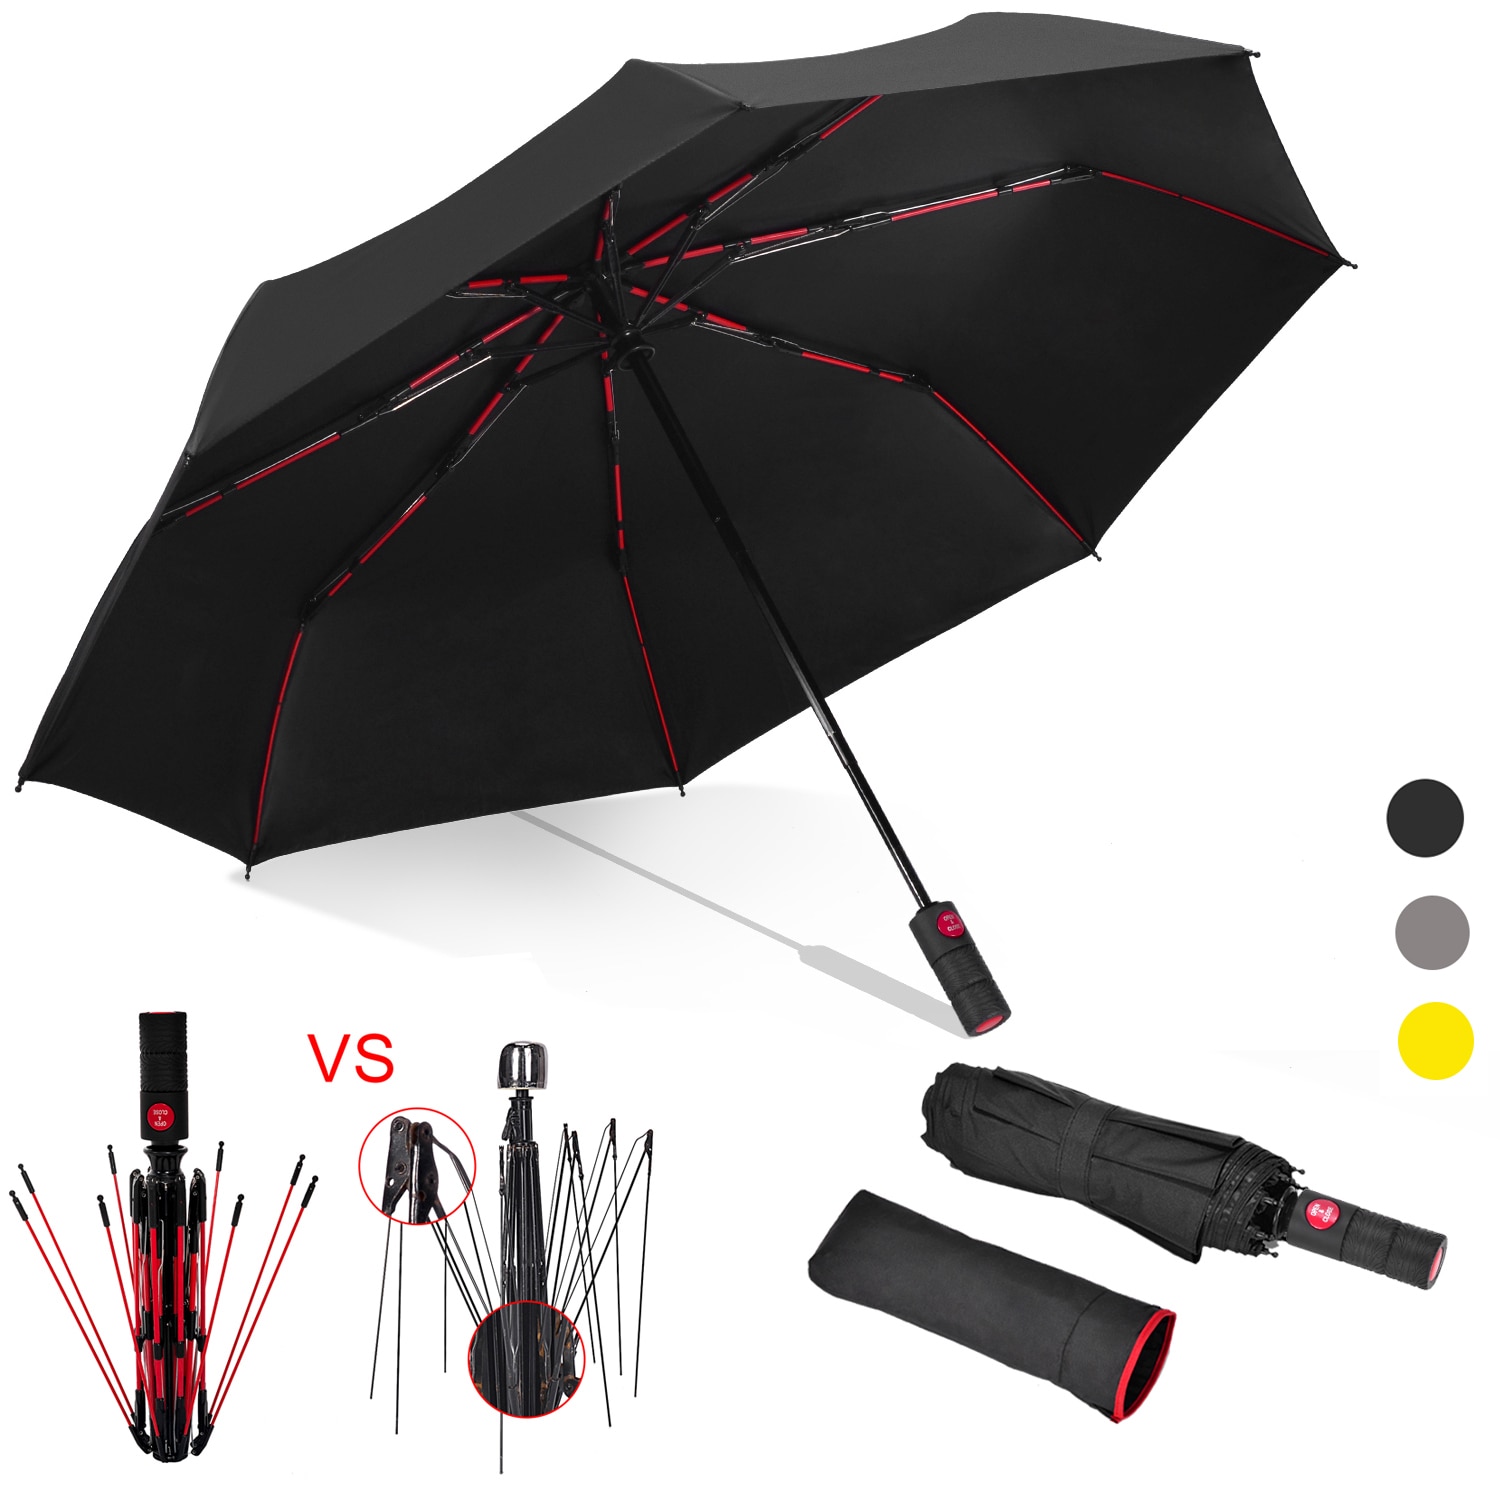 46 Inch Mannen Vrouwen Anti-Uv Regen Winddicht Reizen Paraplu 3 Fold Auto Open Close Automatische Paraplu Zwarte Coating uv Paraplu